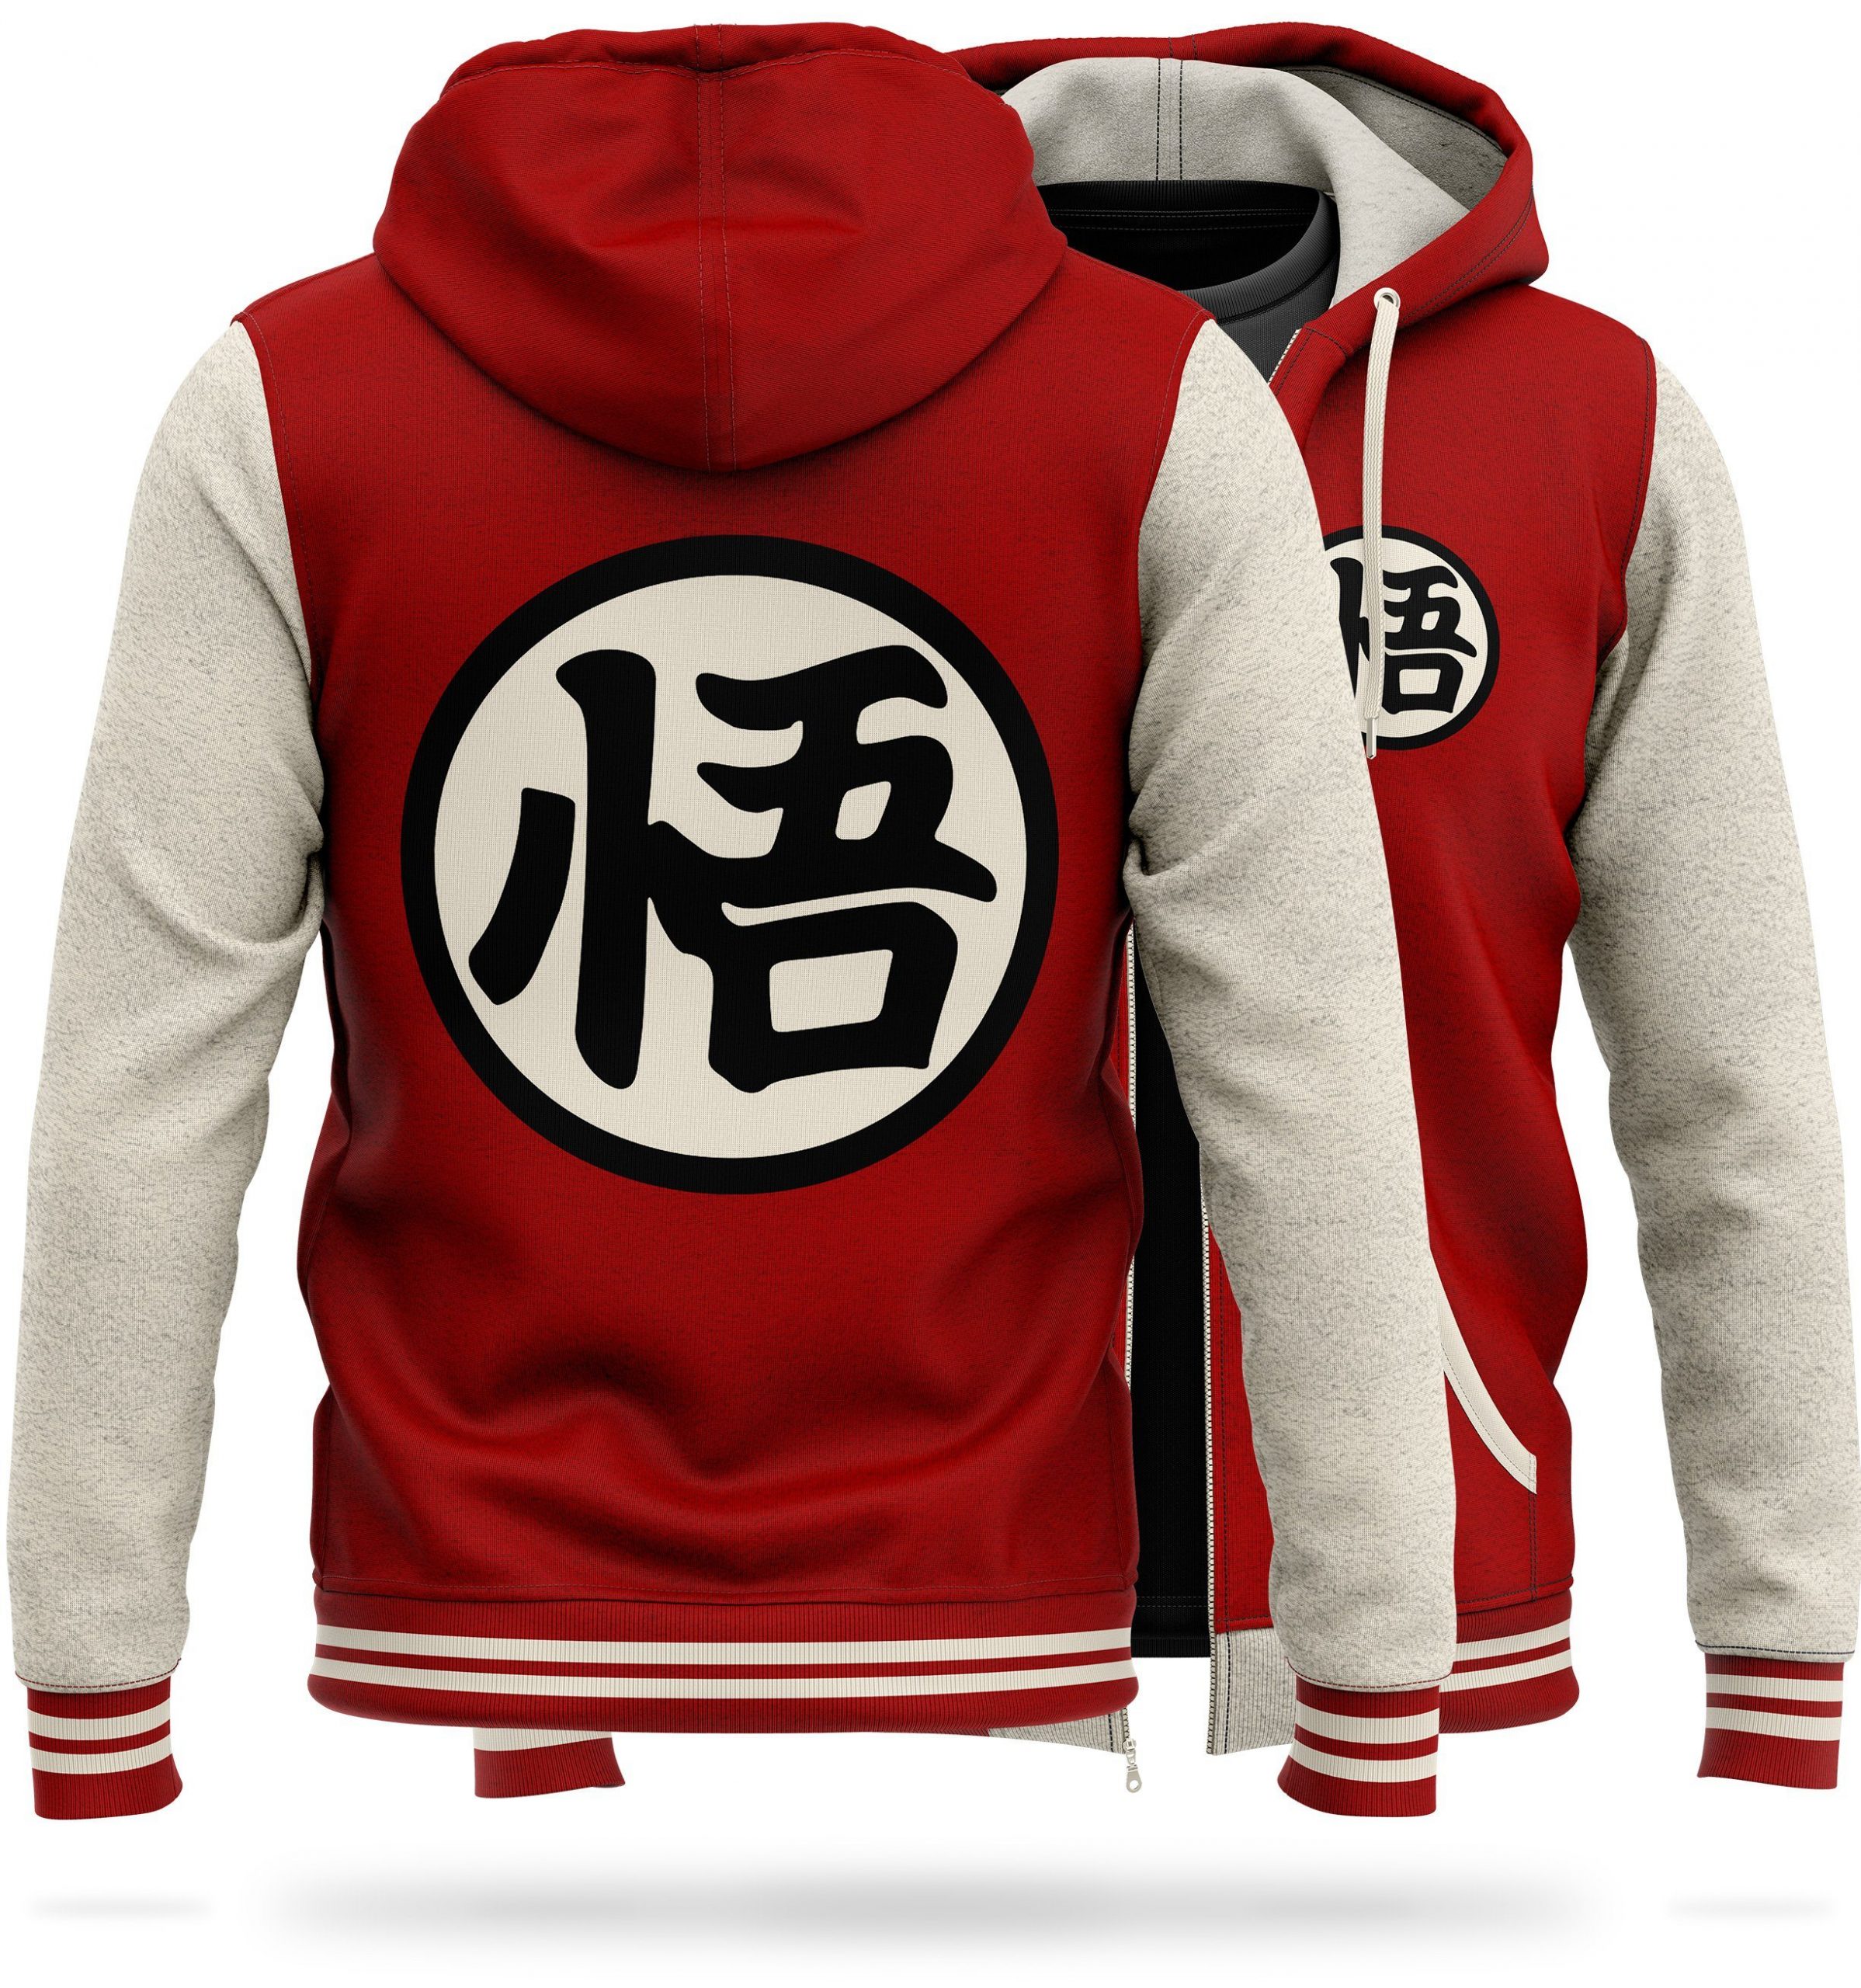 DBZ Fleece Jacket Kanji "Go" (Red) M Official Dragon Ball Z Merch